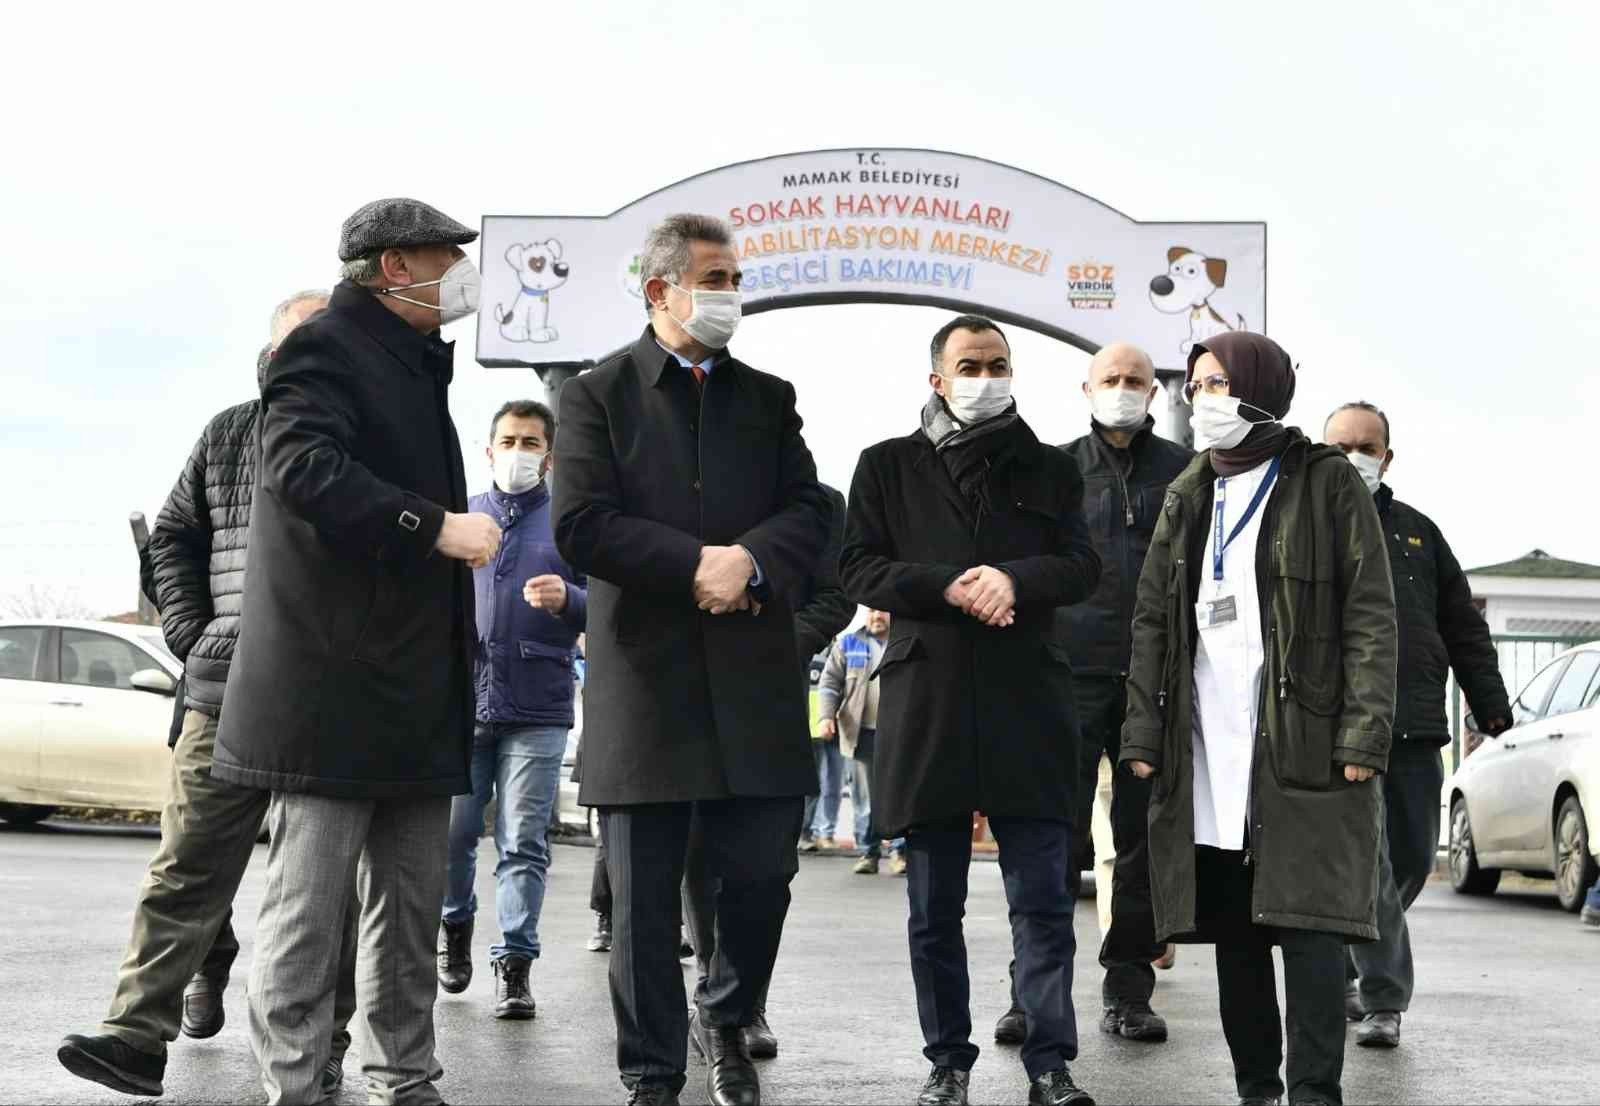 Mamak Belediye Başkanı Köse hayvan barınağını denetledi #ankara